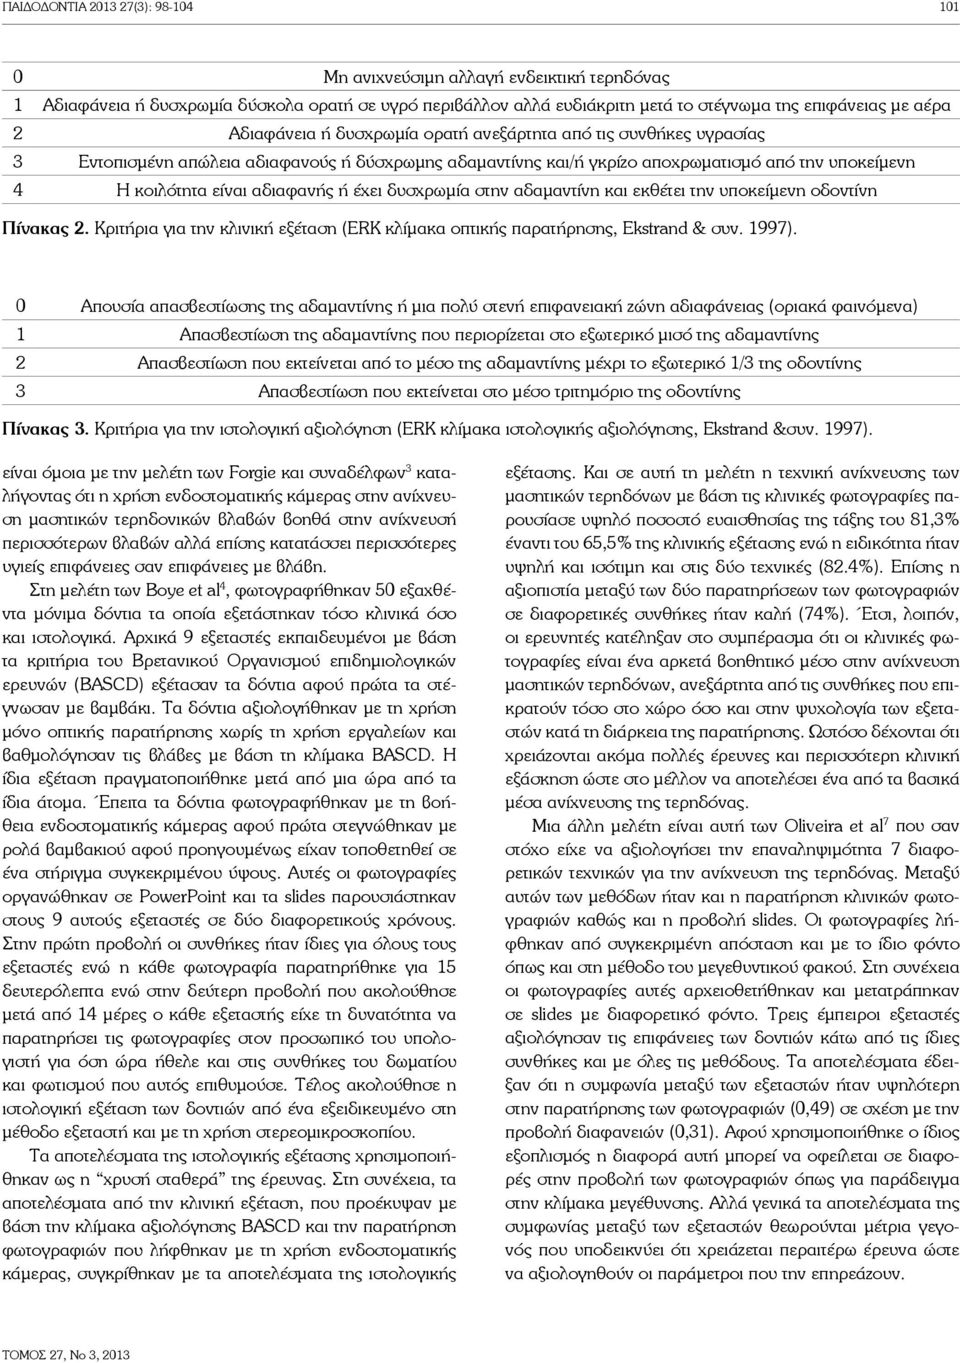 δυσχρωμία στην αδαμαντίνη και εκθέτει την υποκείμενη οδοντίνη Πίνακας 2. Κριτήρια για την κλινική εξέταση (ERK κλίμακα οπτικής παρατήρησης, Ekstrand & συν. 1997).